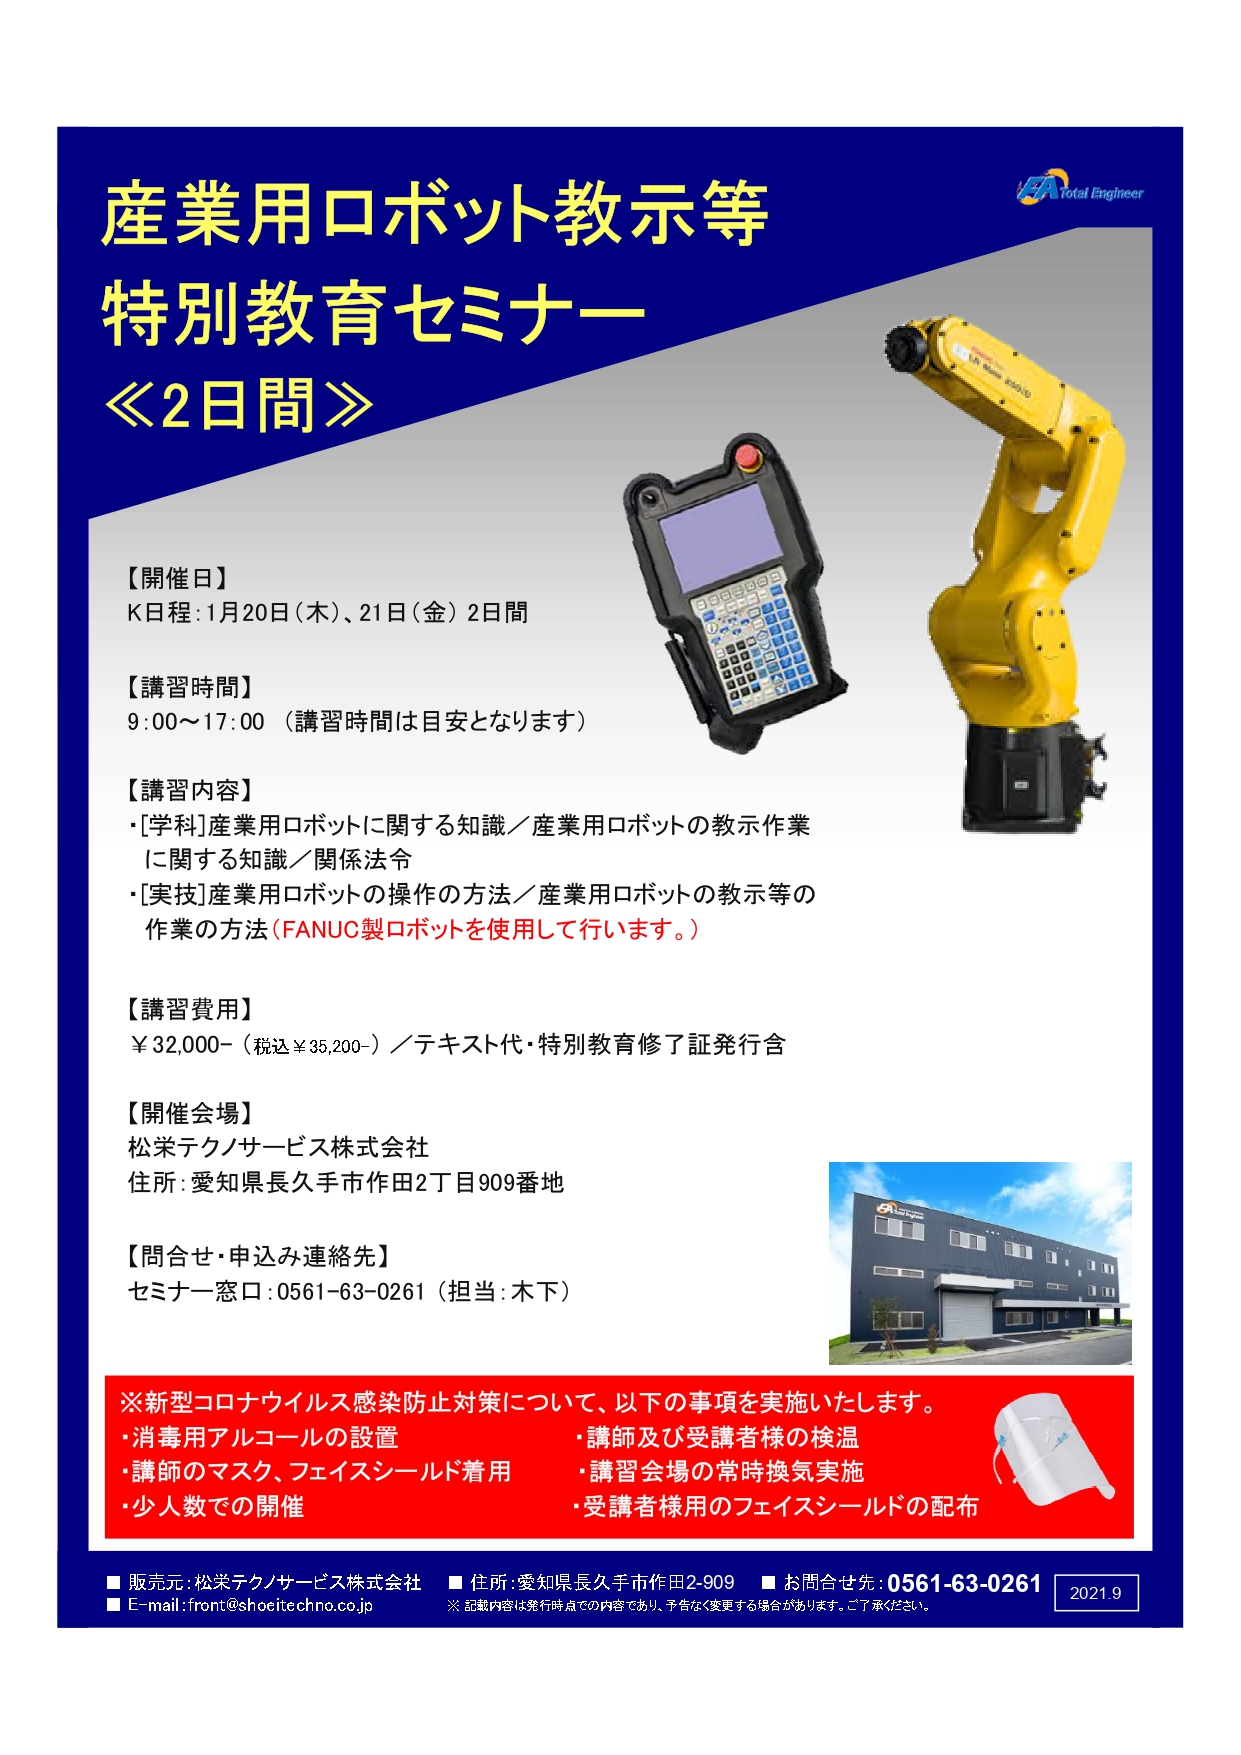 【受付中】産業用ロボット特別教育（教示等）愛知会場開催のお知らせ【2022年1月】